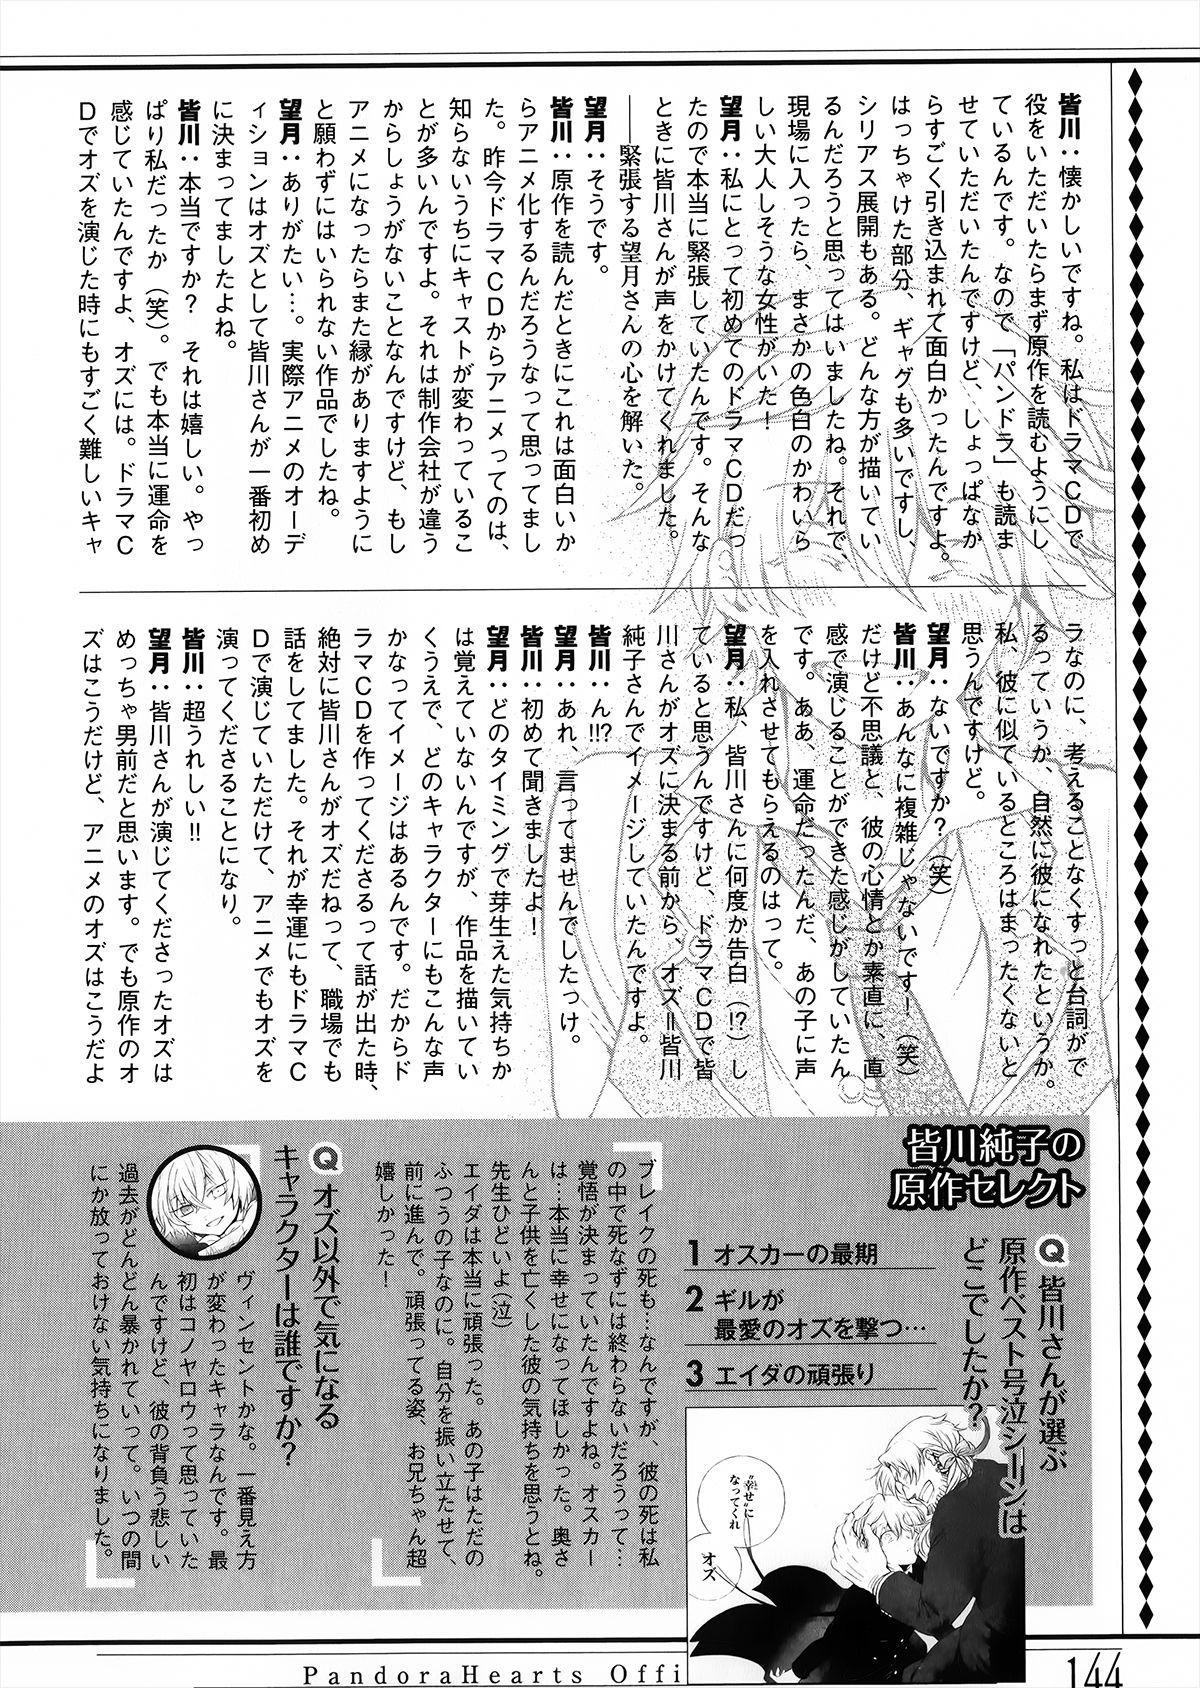 Pandora Hearts Guidebook 24+1: Last Dance パンドラハーツ オフィシャルガイド 24 + 1 ~Last Dance! 148